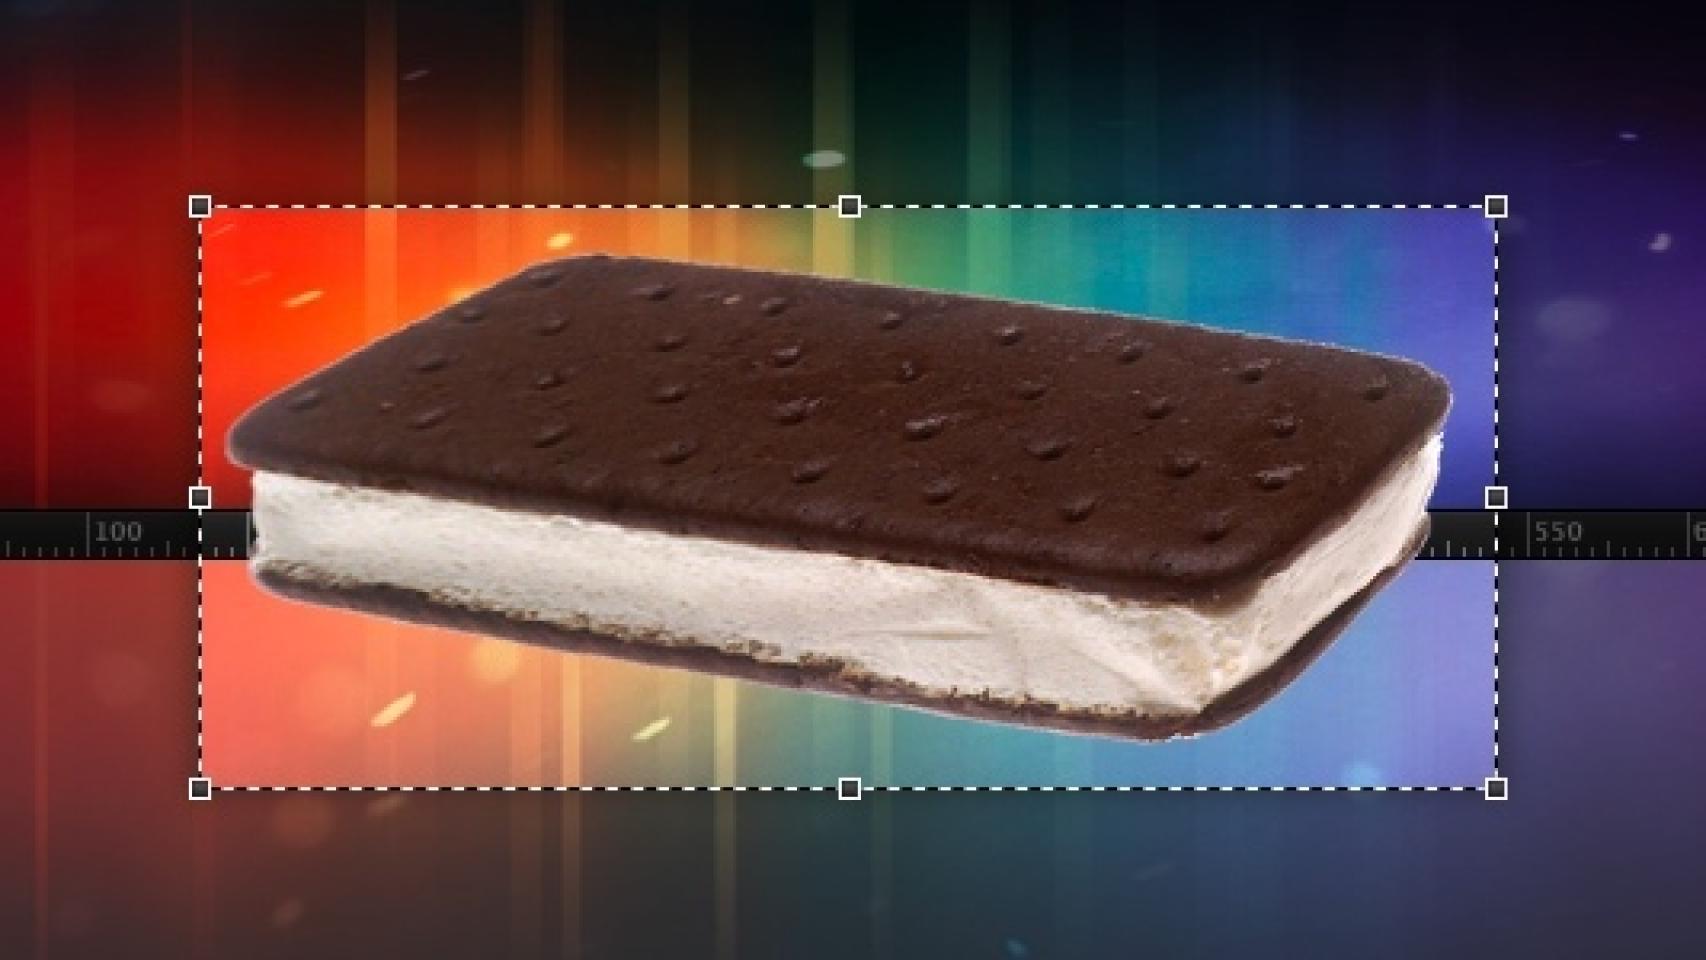 La interfaz de Ice Cream Sandwich, repasando su guía de estilos